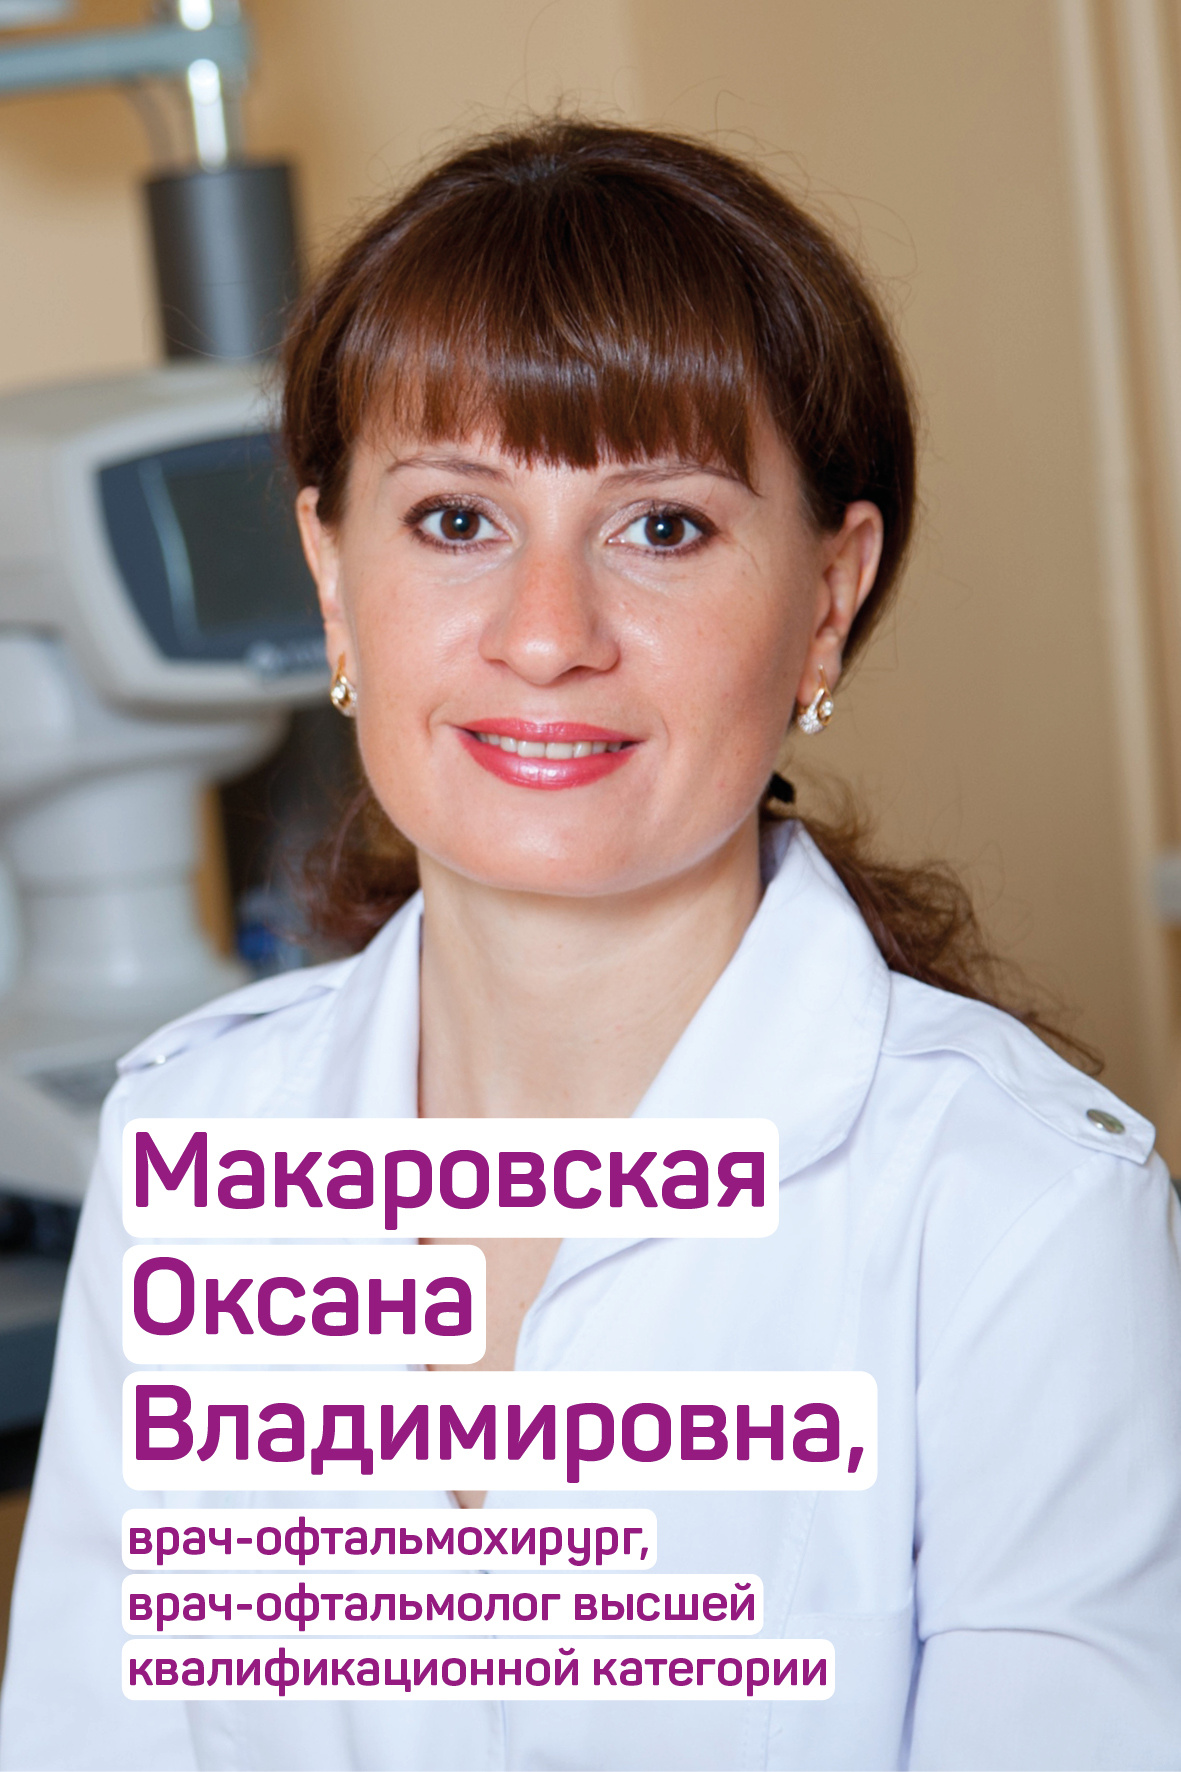 Оксана Макаровская — опытный офтальмохирург Офтальмологической Лазерной Клиники